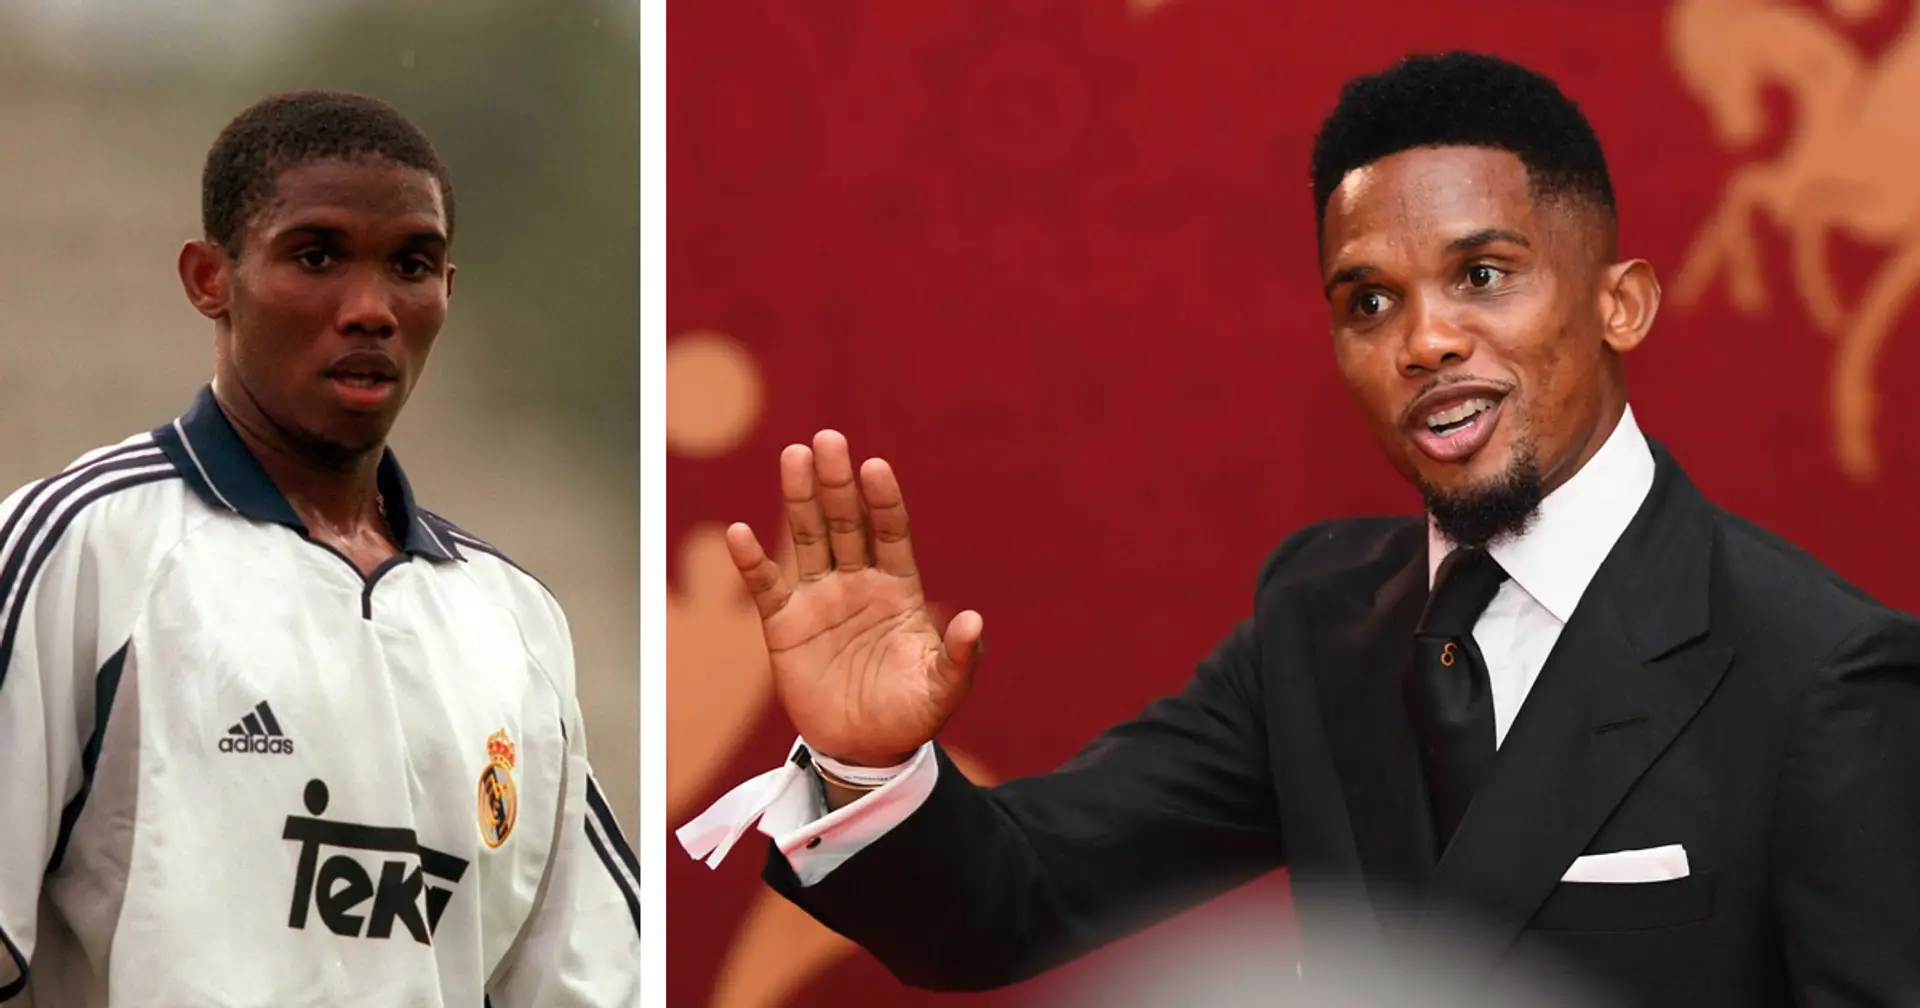 Samuel Eto'o erinnert sich daran, wie er seine Eltern überzeugte, ihm zu erlauben, Fußball zu spielen, und wie sich sein Leben nach dem Wechsel zu Real Madrid für immer veränderte